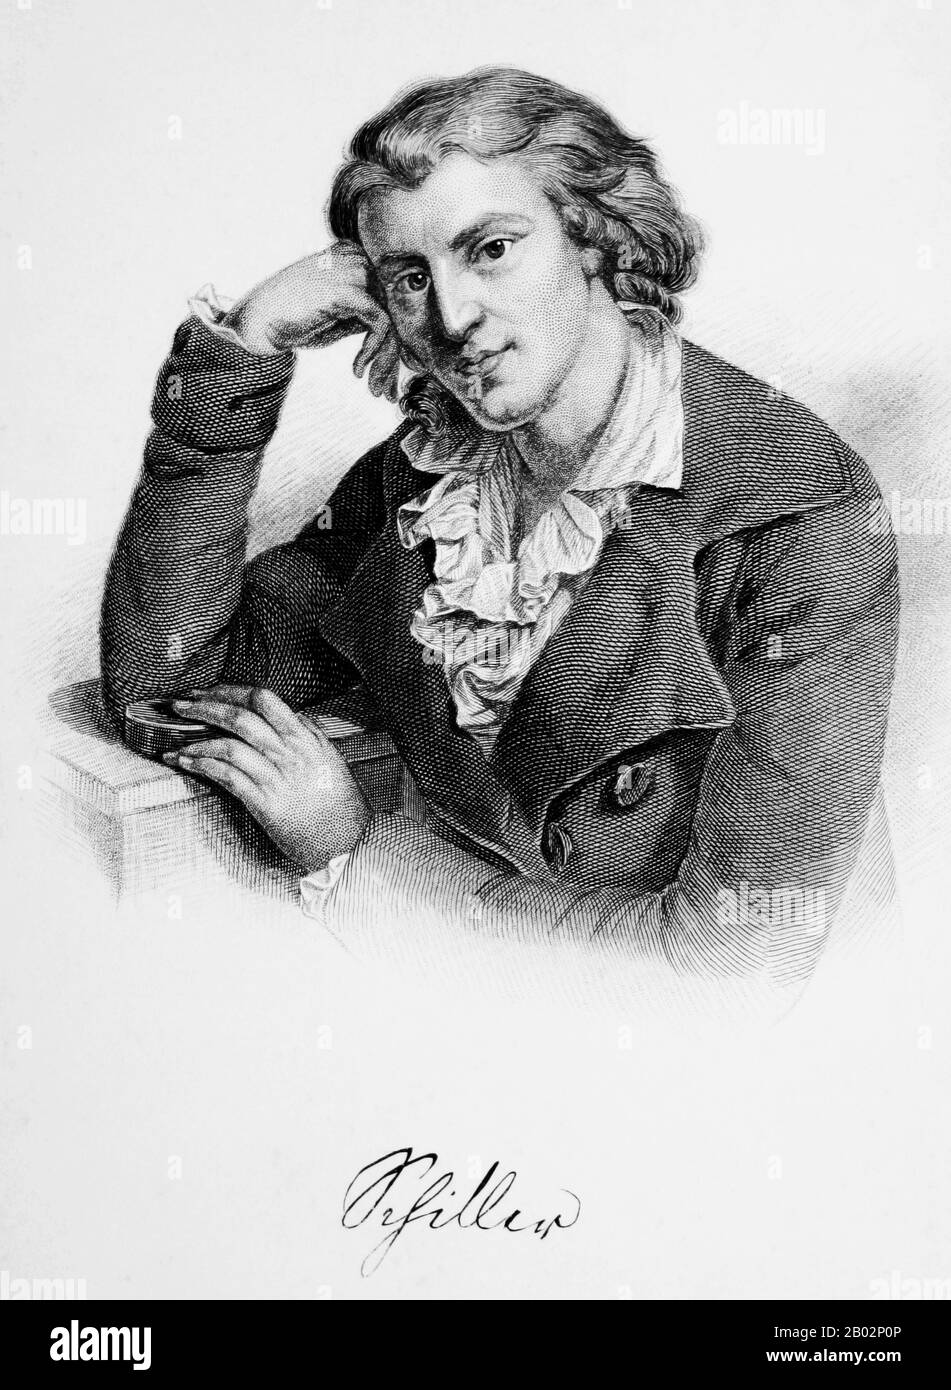 Johann Christoph Friedrich von Schillers (* 10. November 1759; † 9. Mai 1805) war ein deutscher Dichter, Philosoph, Historiker und Dramatiker. Während der letzten siebzehn Jahre seines Lebens (1785-1805) verband sich mit Johann Wolfgang von Goethe-Institut eine produktive Freundschaft. Sie diskutierten häufig Fragen zur Ästhetik, und Schillers ermutigte Goethe-Werke, die er als Skizzen hinterlassen hatte, zu beenden. Diese Beziehung und diese Diskussionen führten zu einer Zeit, die nun als "Weimar-Klassizismus" bezeichnet wurde. Von den meisten Deutschen gilt Schillers als Deutschlands wichtigster klassischer Dramatiker. Stockfoto